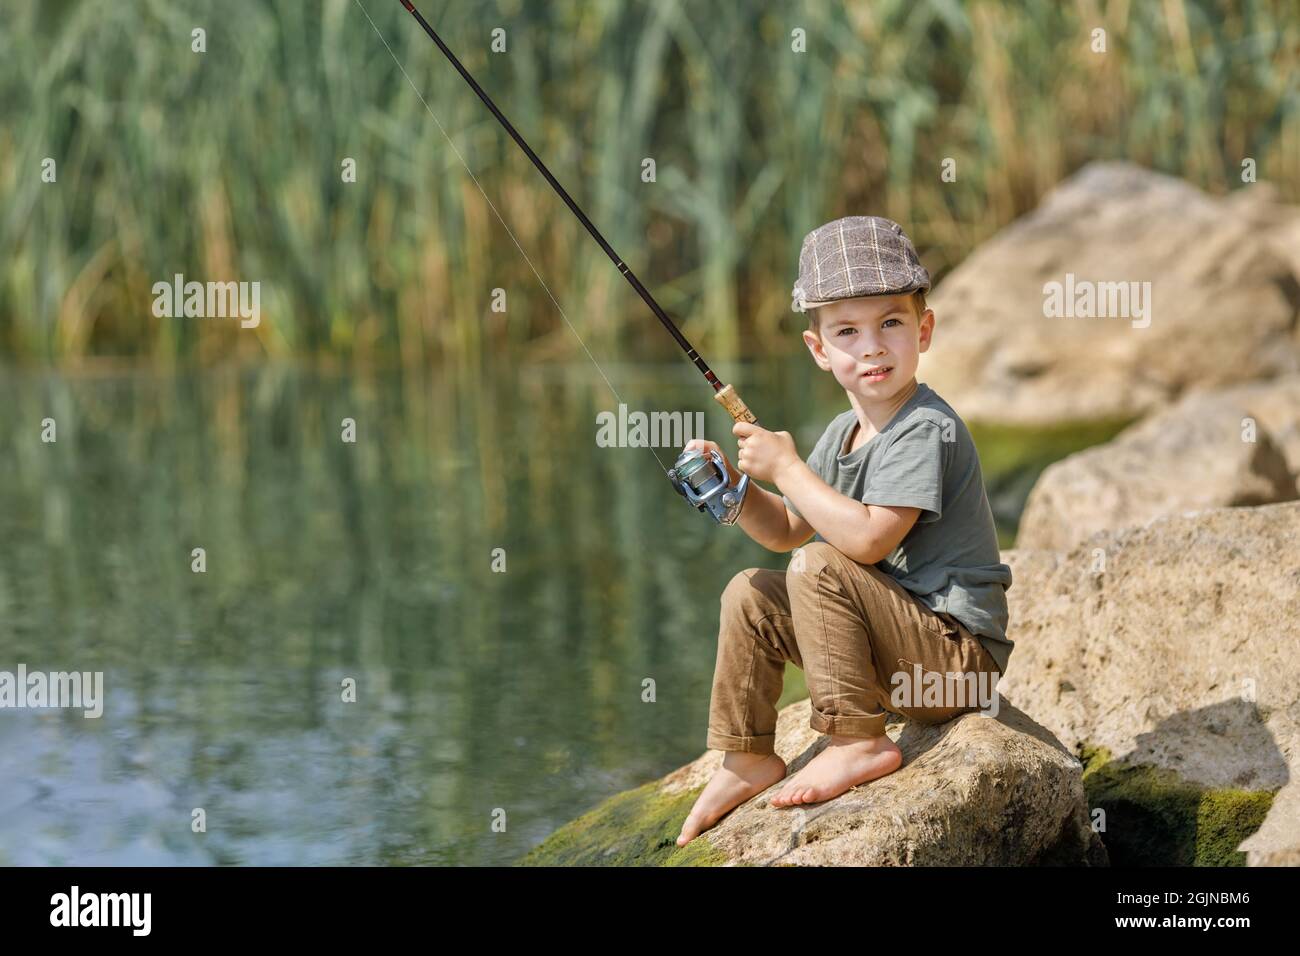 https://c8.alamy.com/comp/2GJNBM6/little-boy-sitting-on-stone-and-fishing-2GJNBM6.jpg